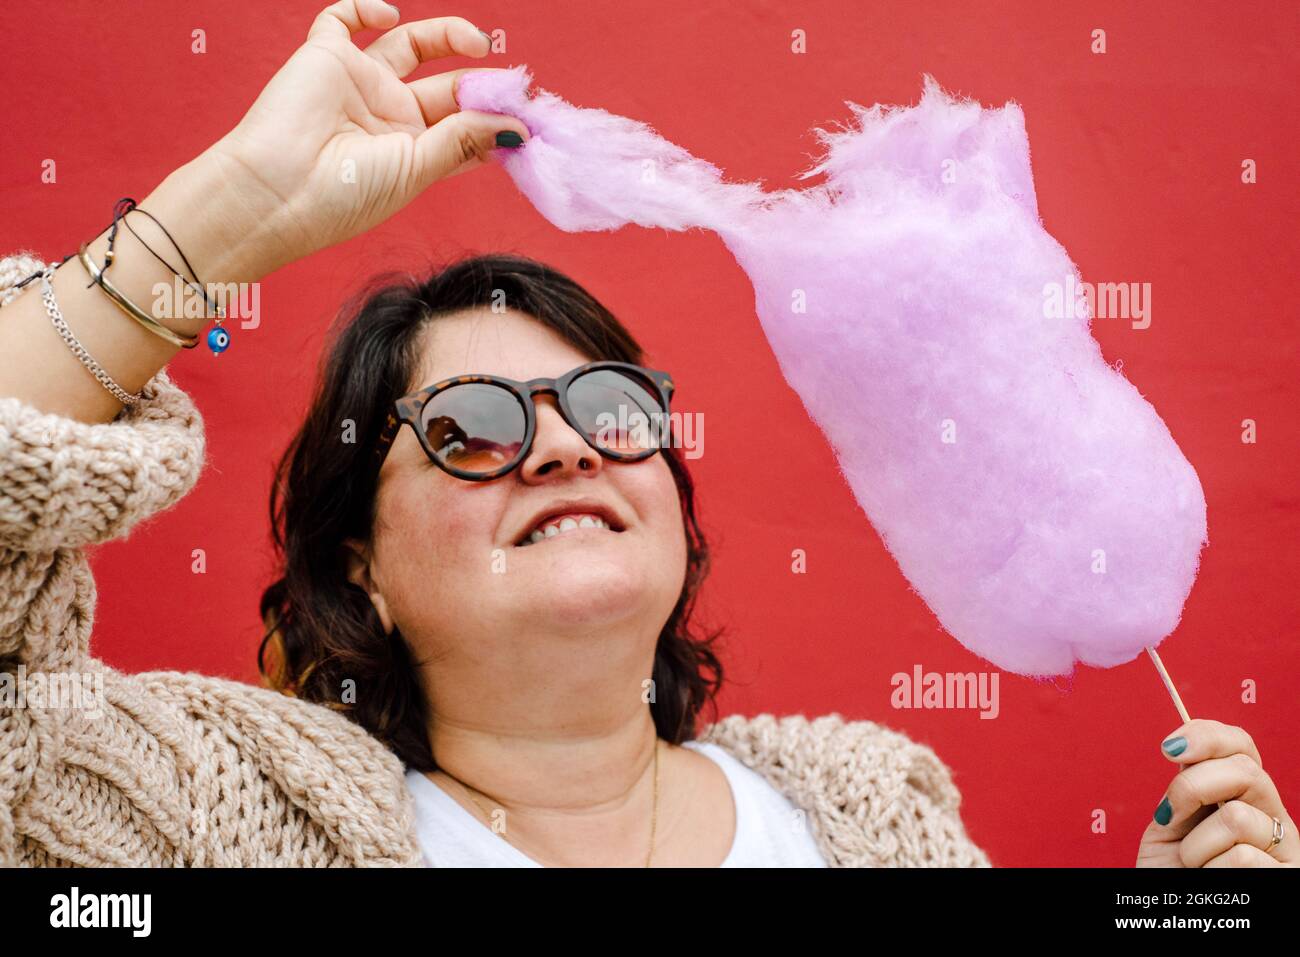 La donna strappa un pezzo di caramella di cotone lilla per mangiarlo, indossa bicchieri scuri ed è su sfondo rosso Foto Stock